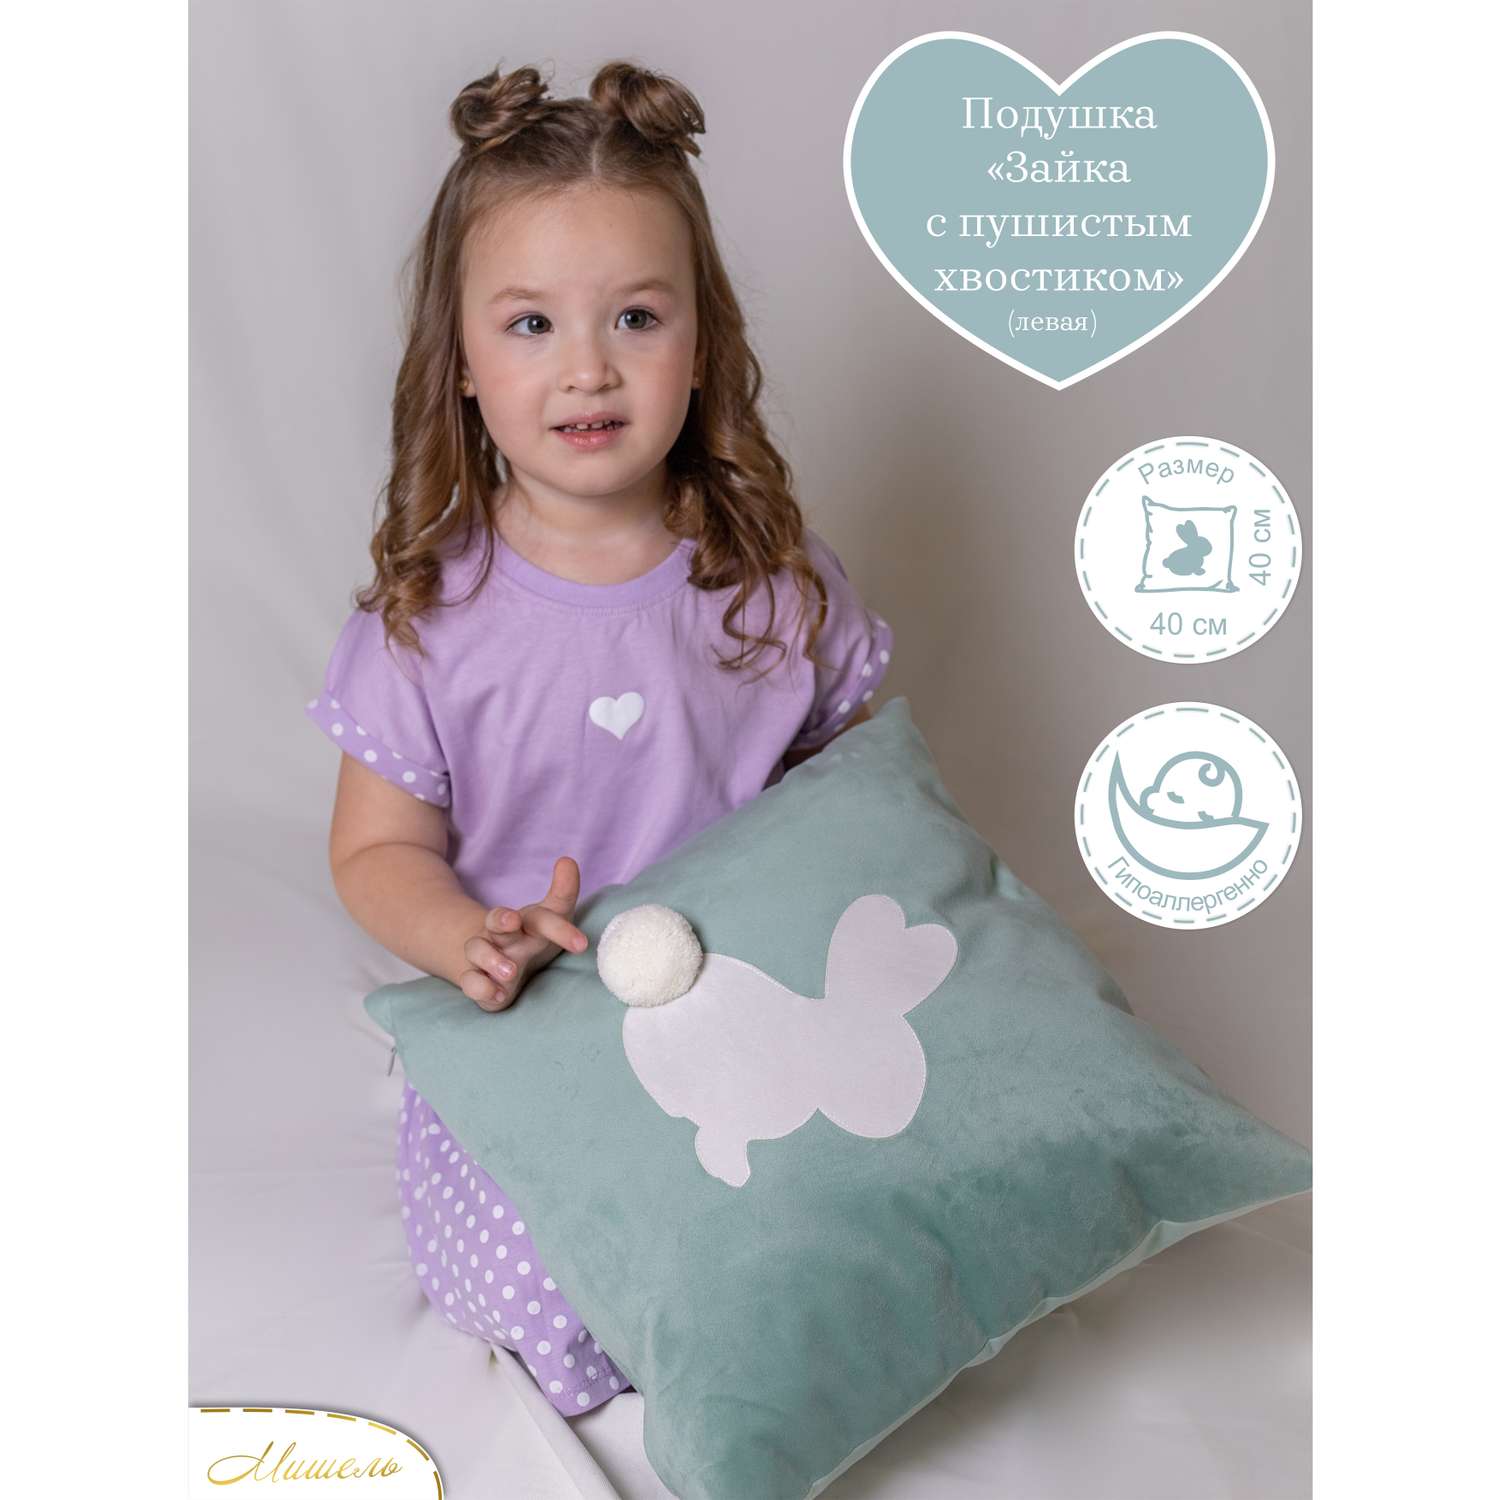 Подушка декоративная детская Мишель Зайка с пушистым хвостом мятный цвет левая - фото 1